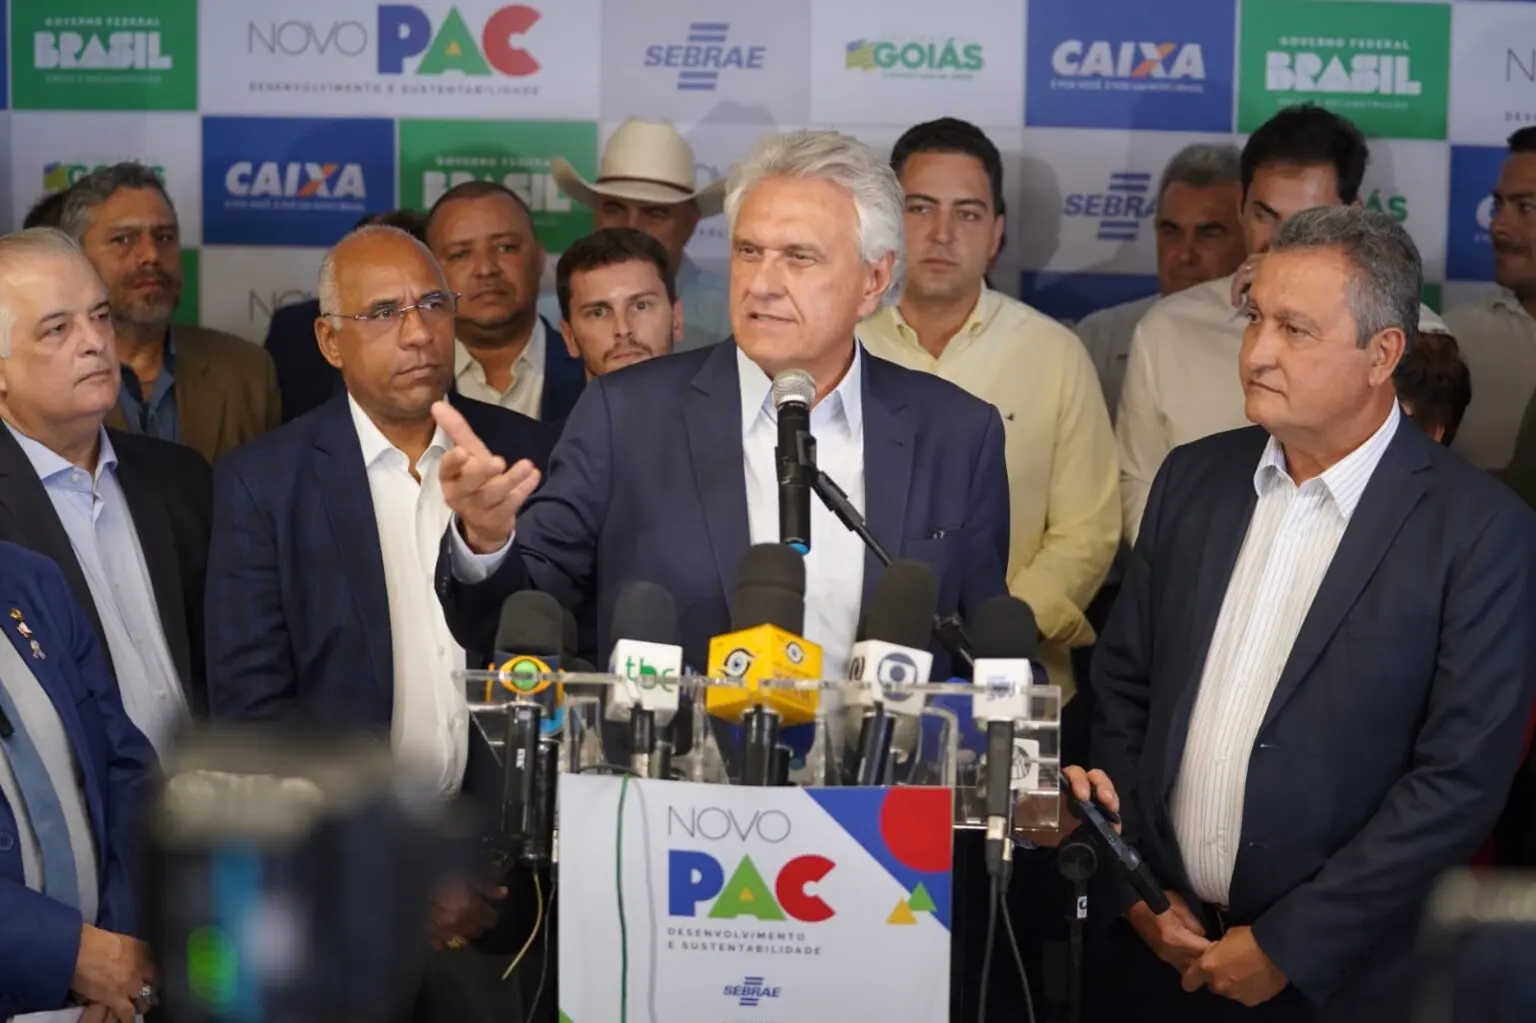 Lançamento do novo PAC em Goiás conta com diversas autoridades